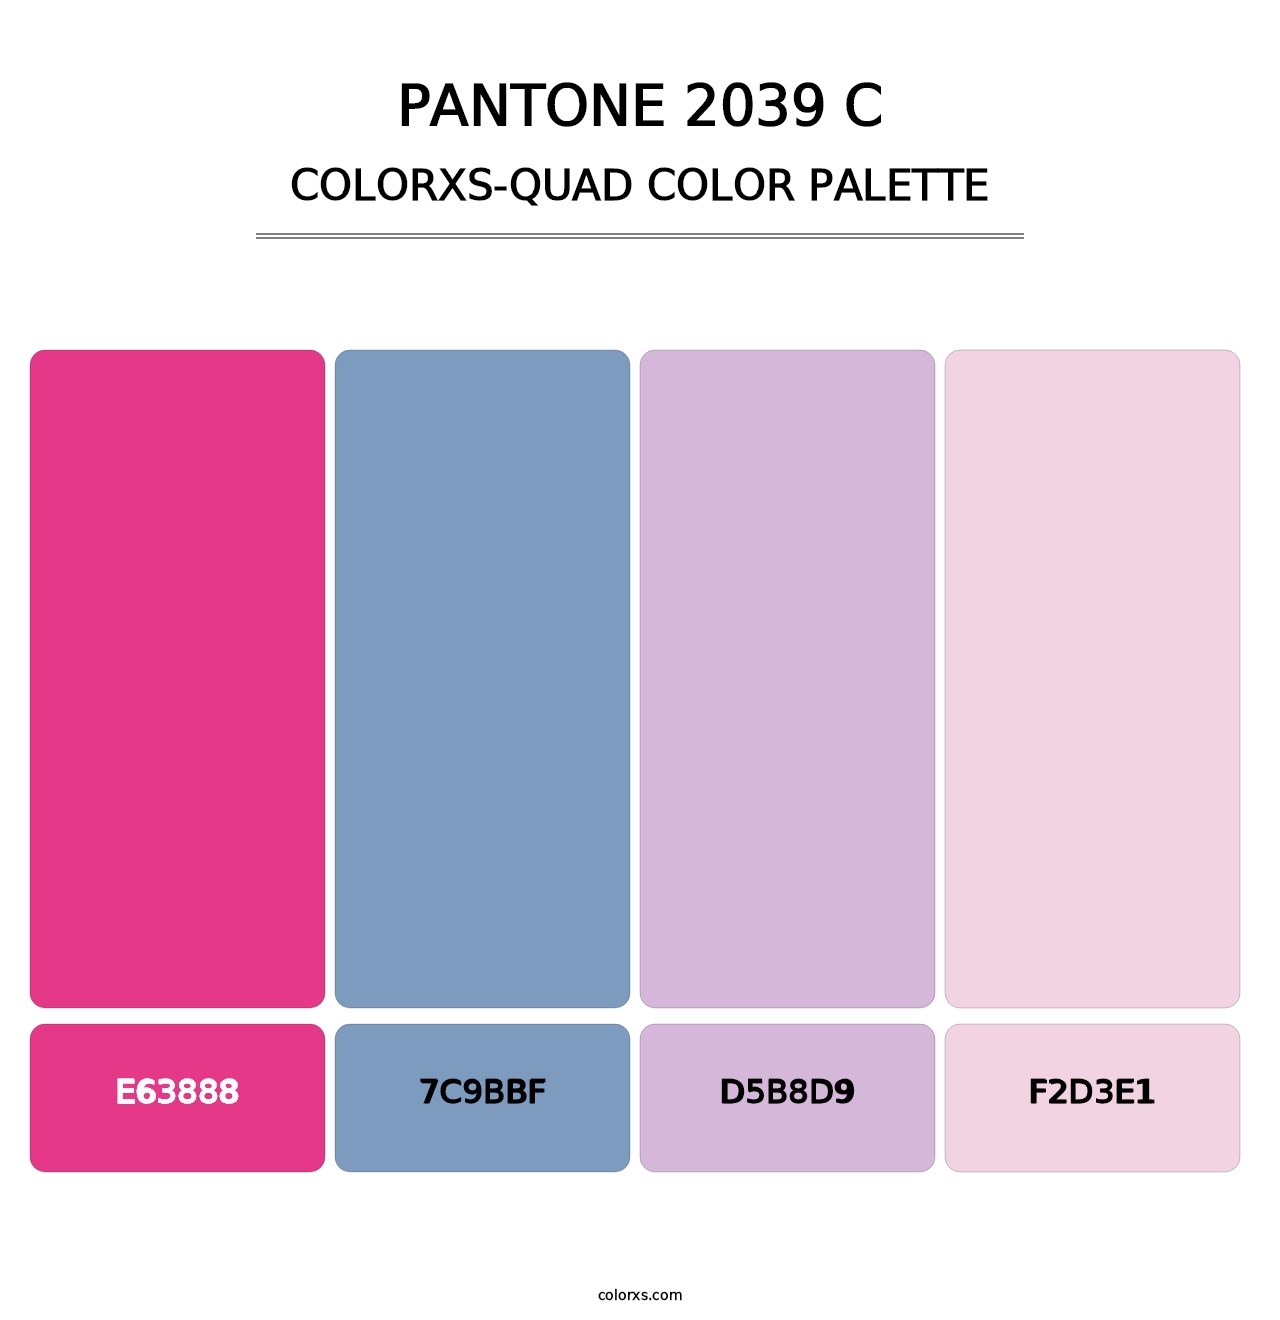 PANTONE 2039 C - Colorxs Quad Palette